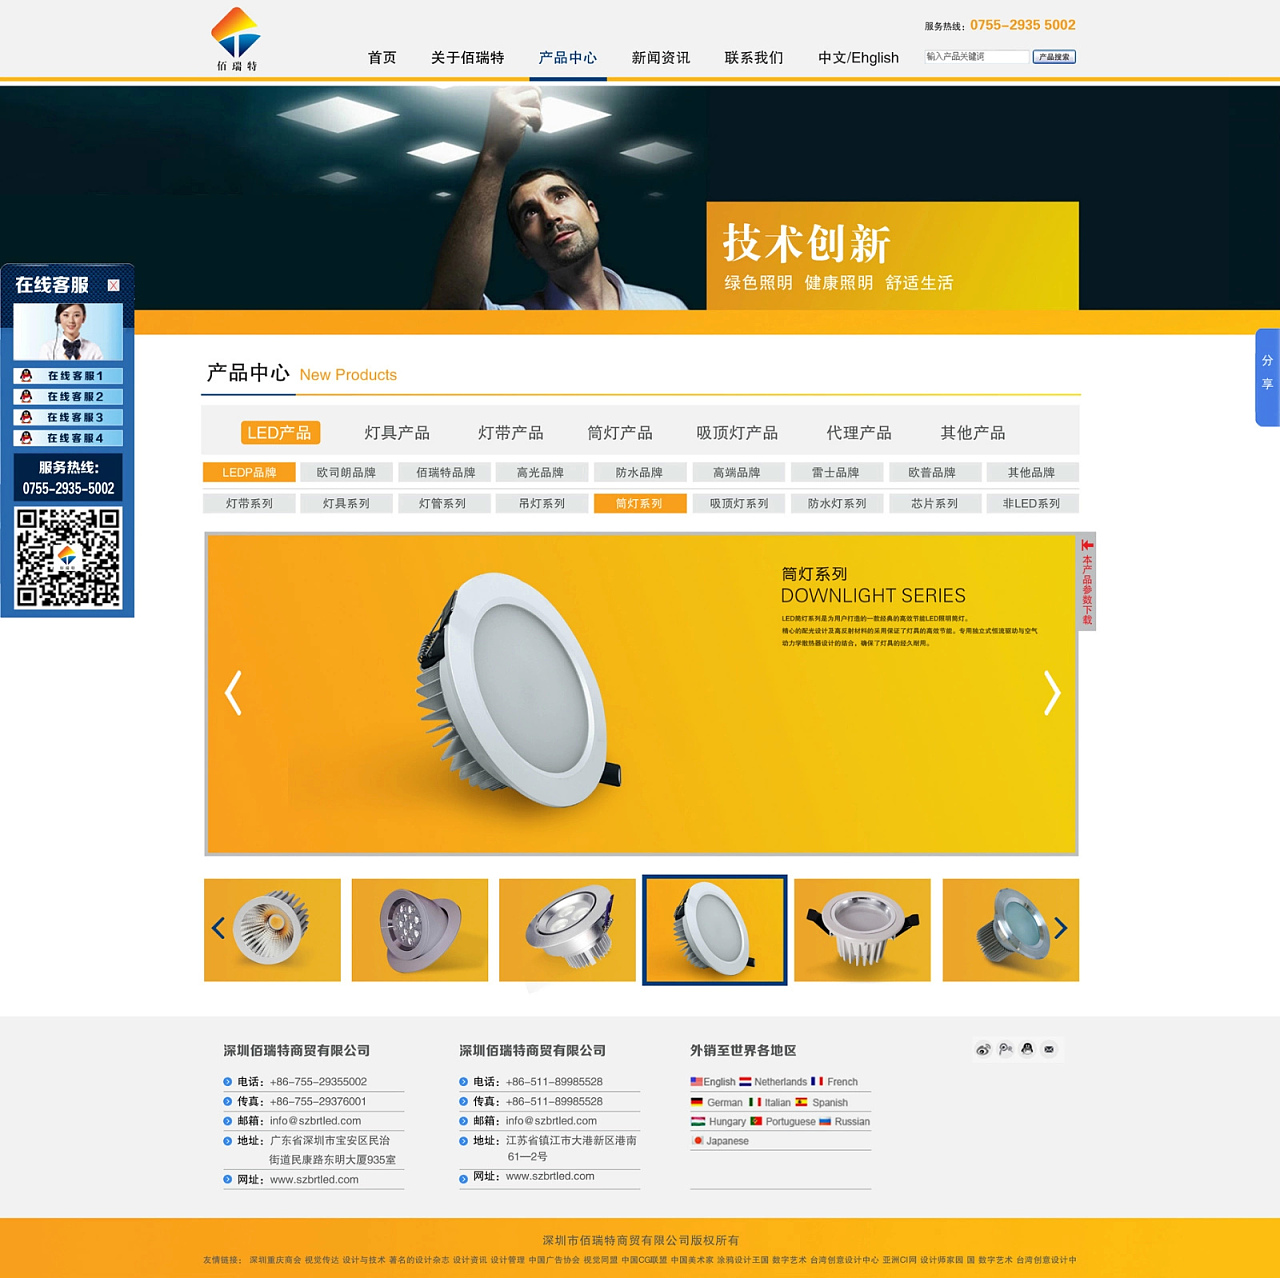 深圳佰瑞特网站 营销型LED产品网站 UI界面 品牌形象